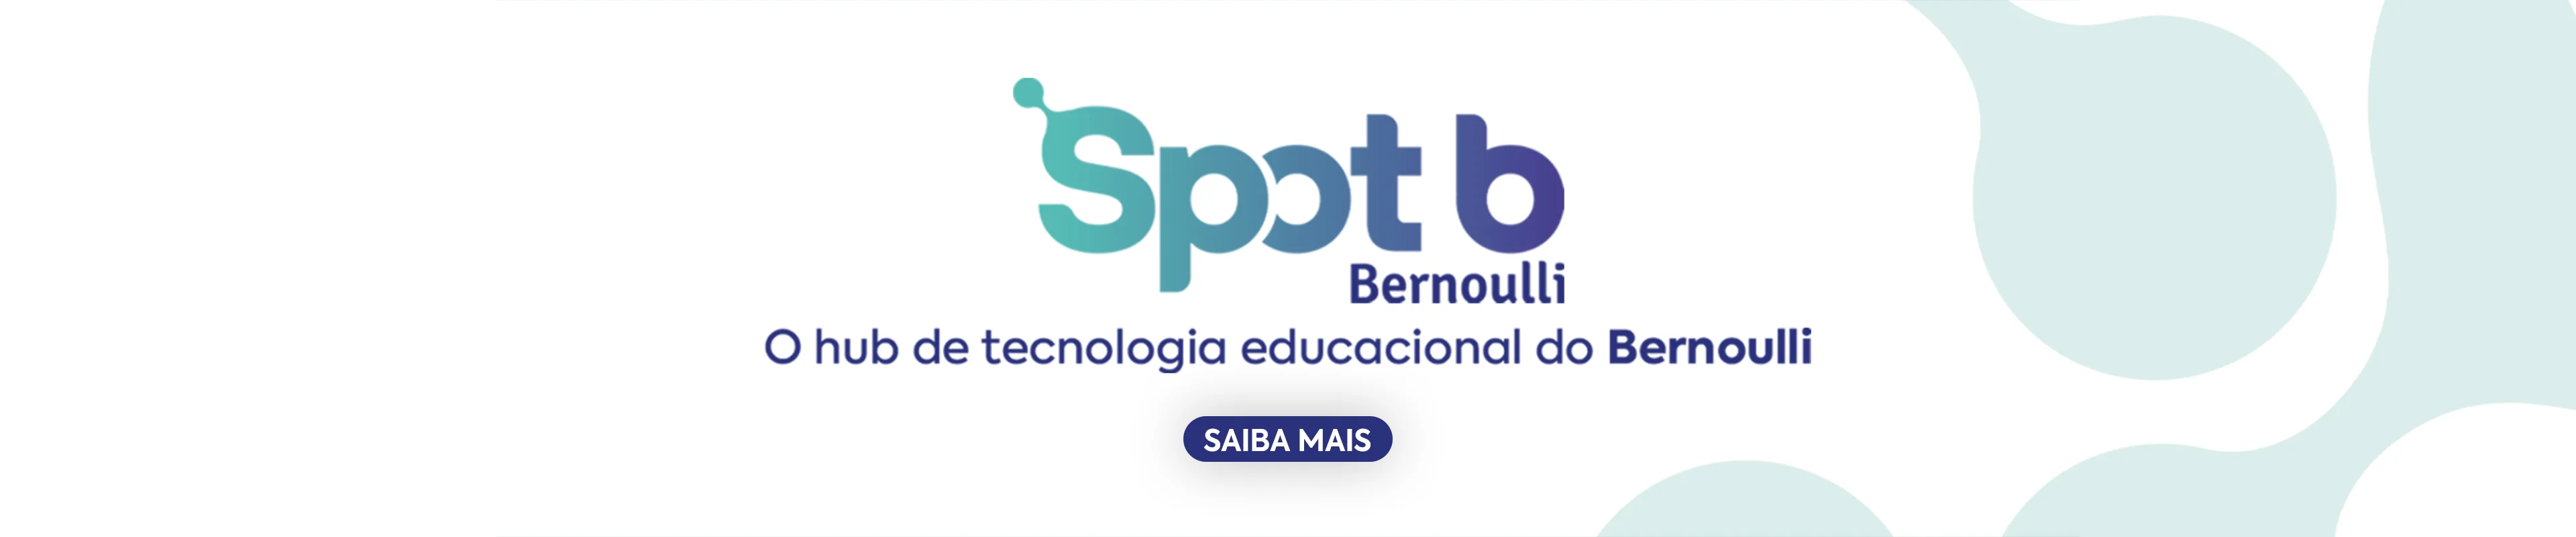 Carrossel divulgando o hub de tecnologia educacional do Bernoulli chamado Spot B